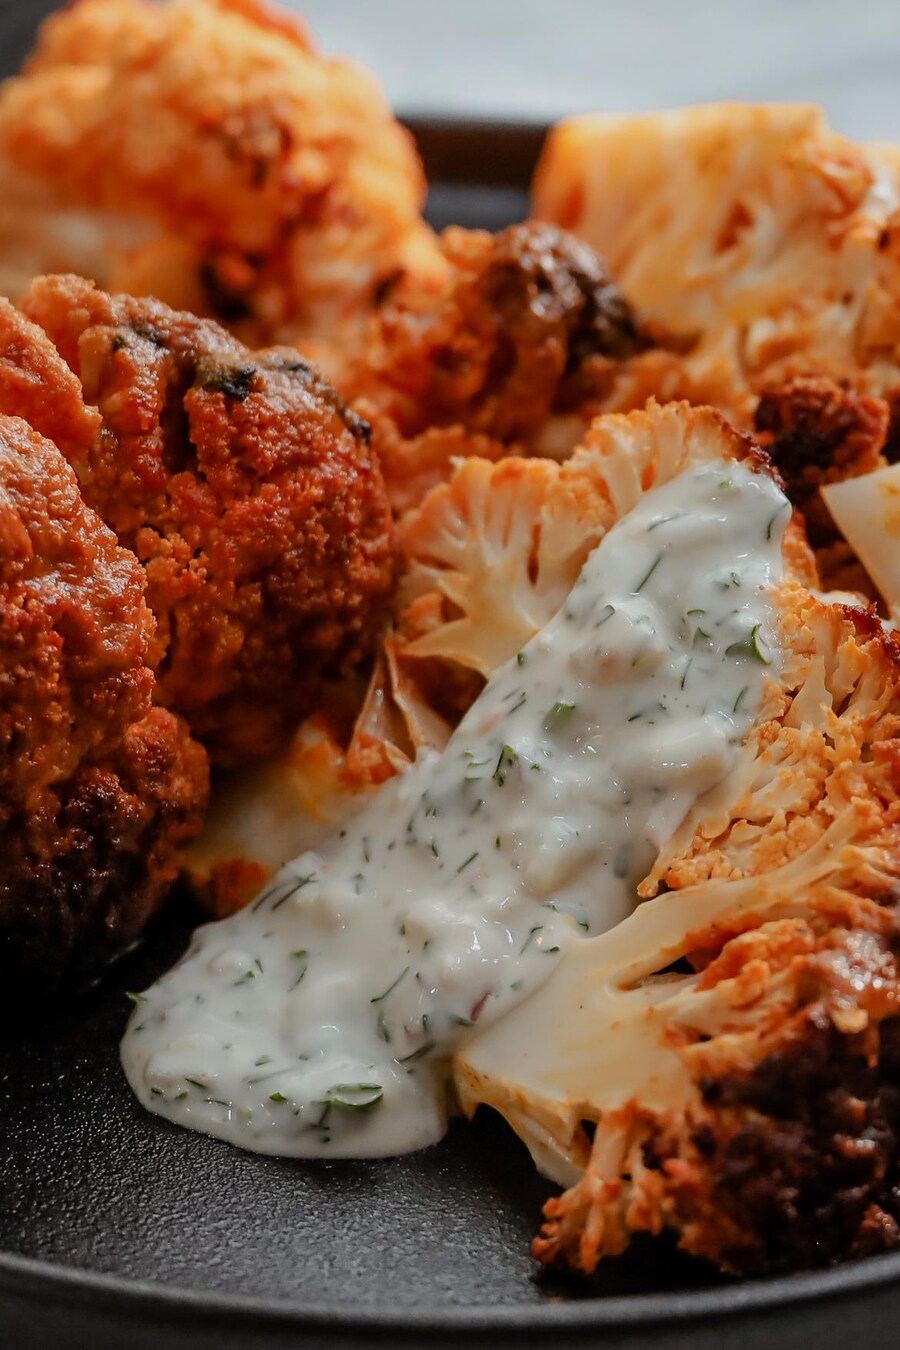 Des morceaux de chou-fleur rôti style buffalo, accompagnés de sauce au fromage bleu.